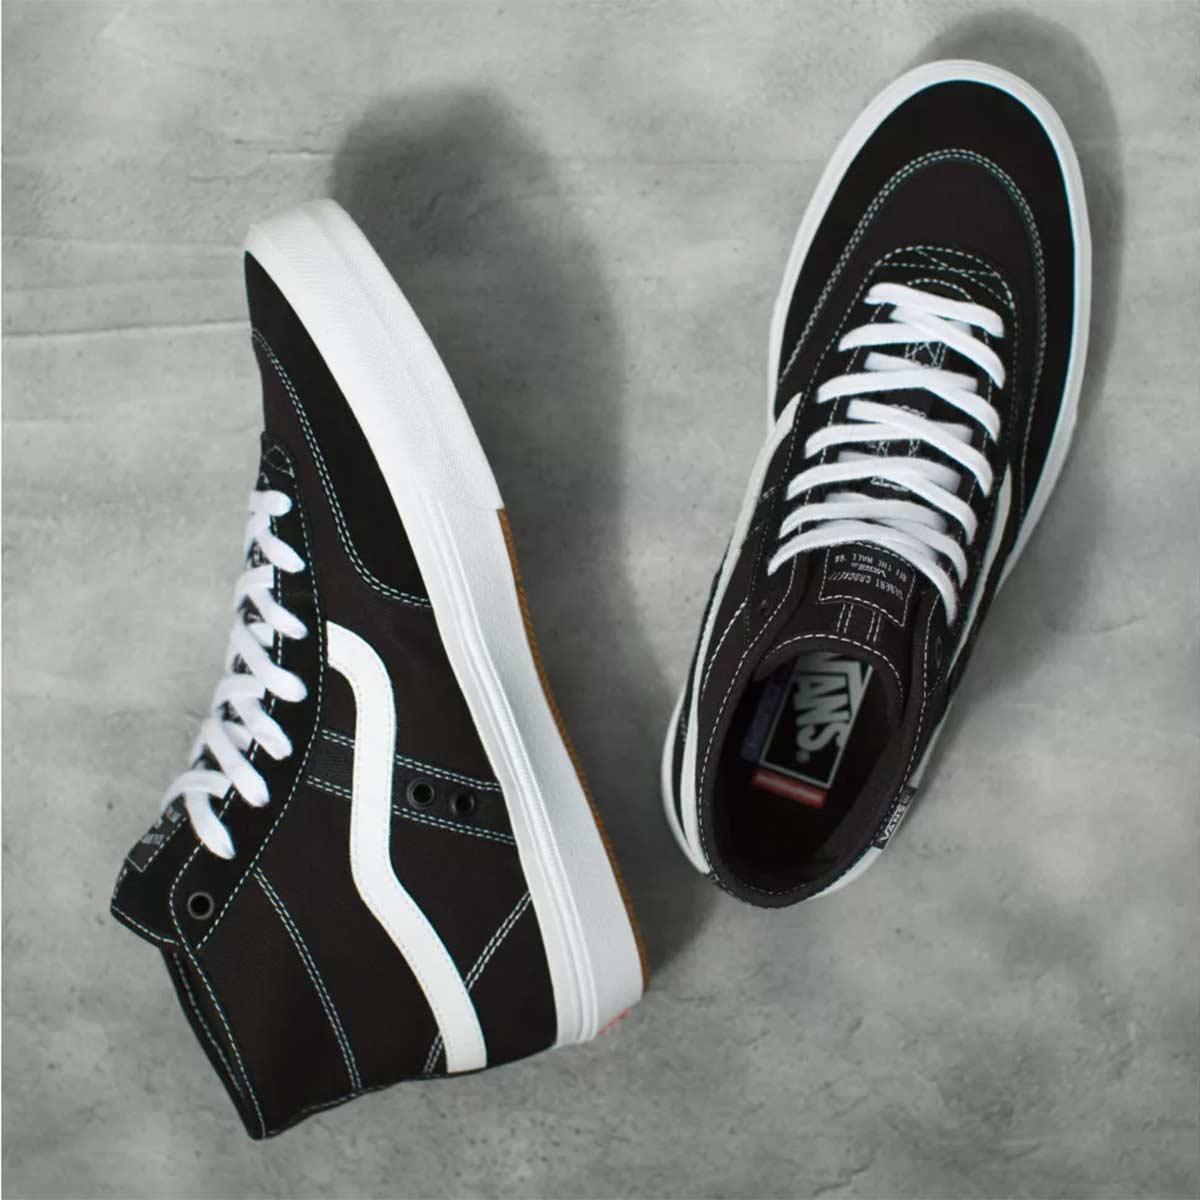 Vans Crockett High Skate Shoes, Black/White